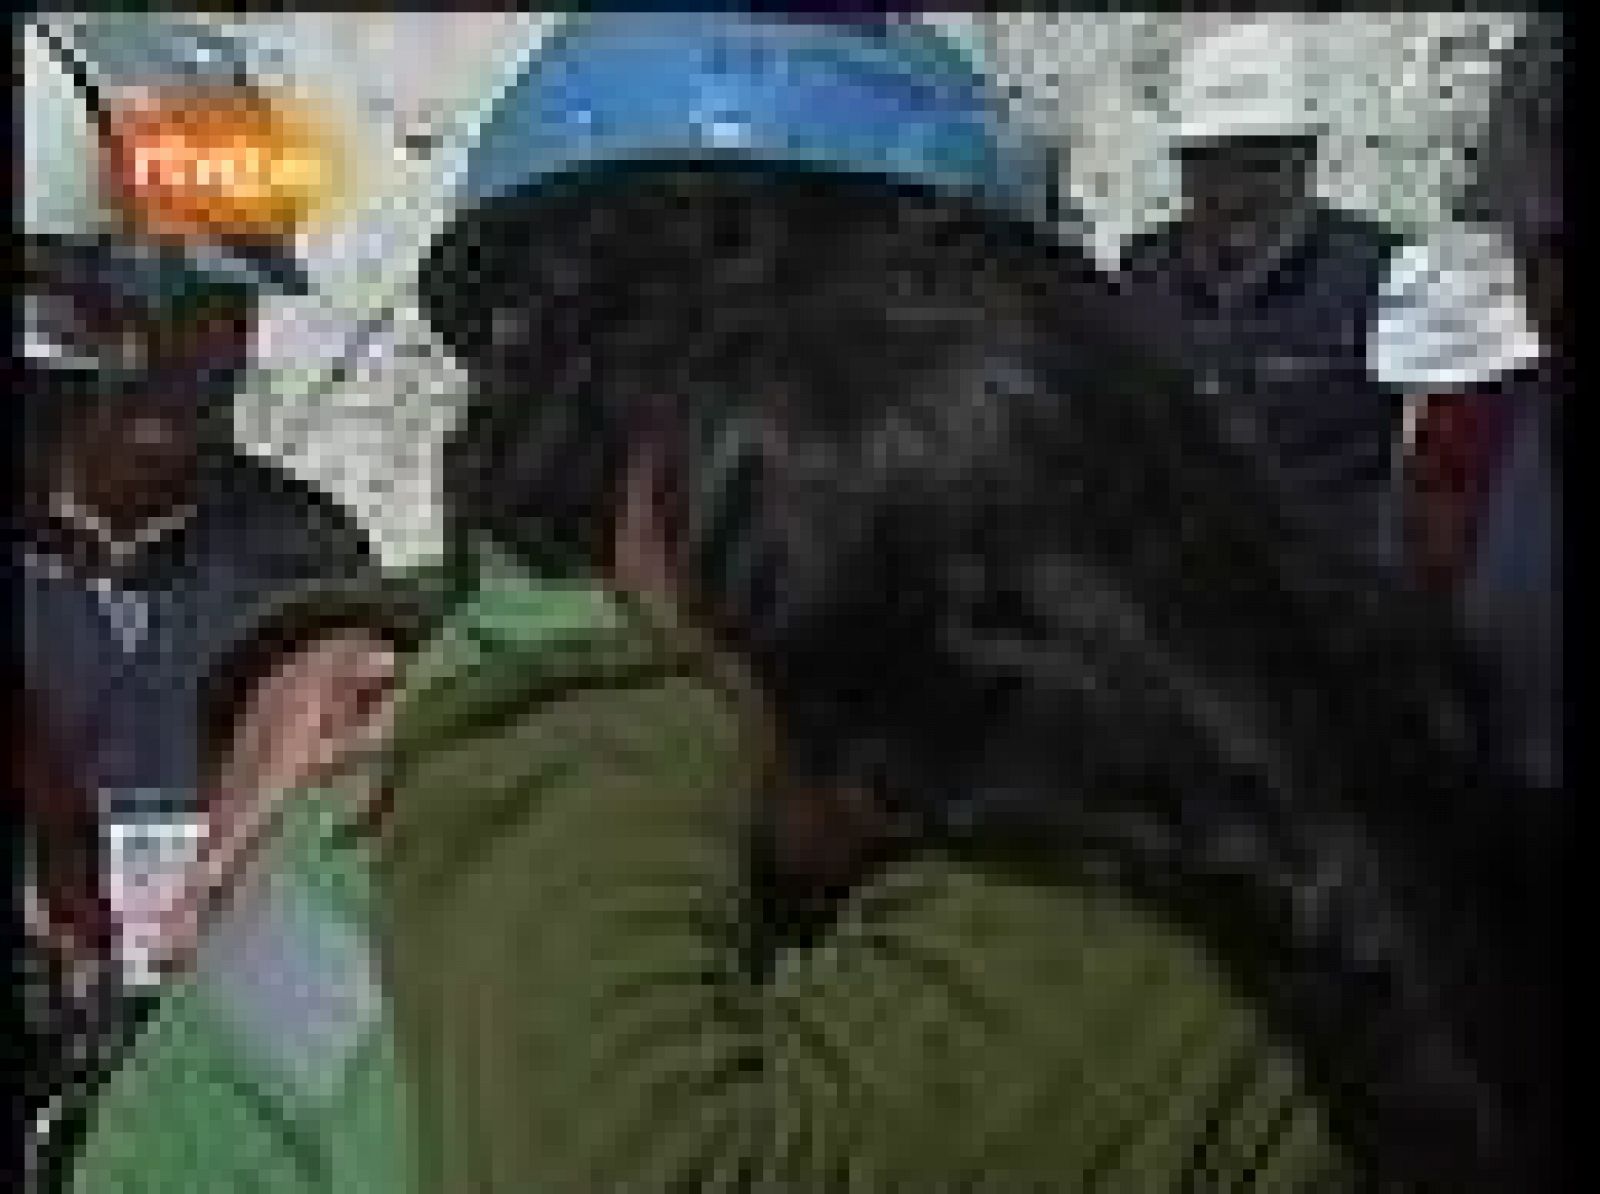 Entró con 33 años y salió con 34. El minero se abraza a su mujer que está embarazada de tres meses.
